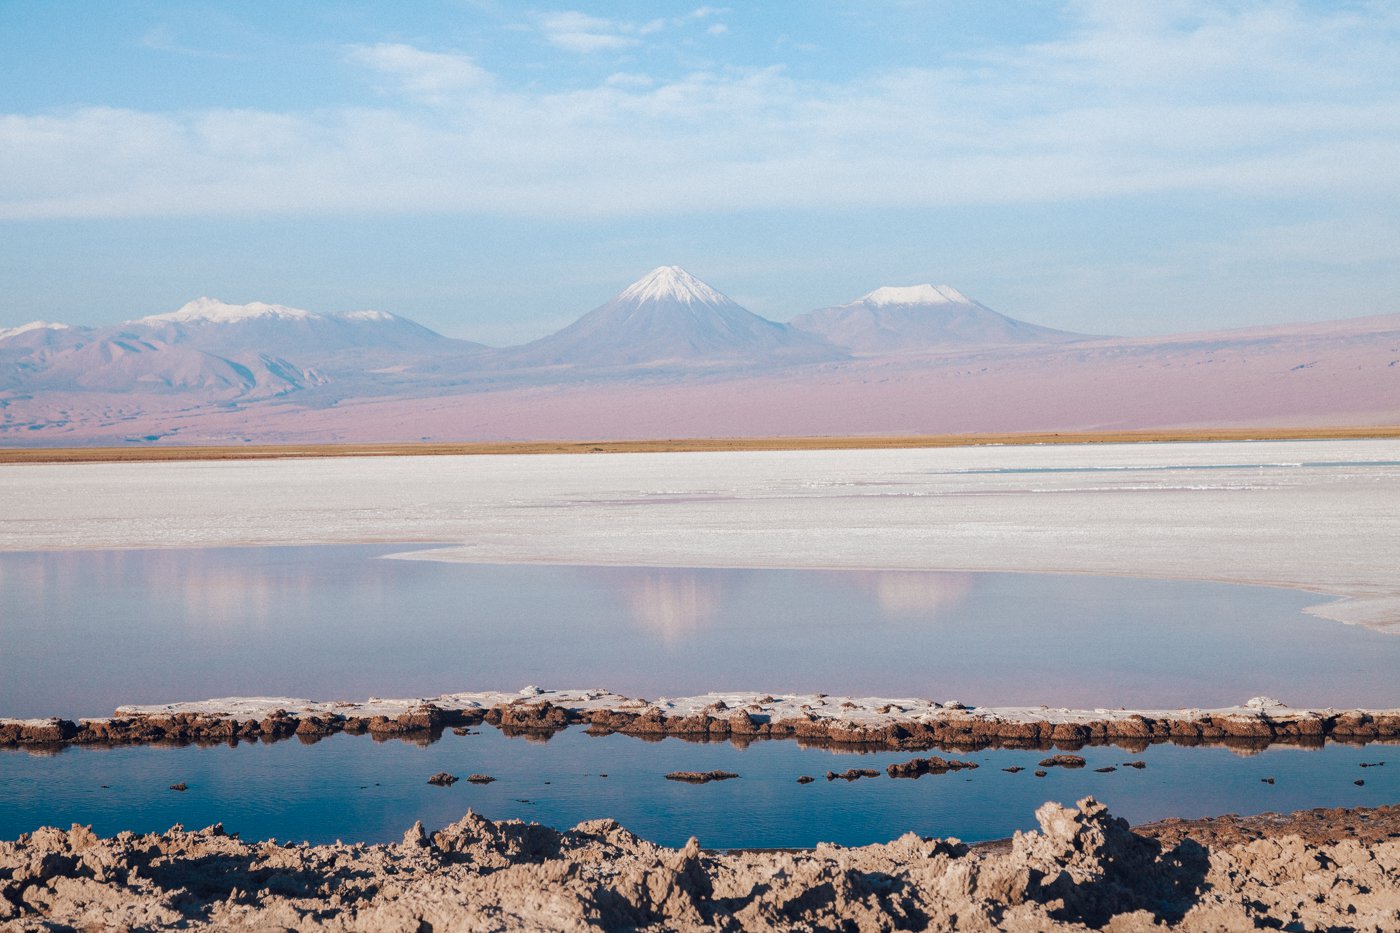 Deserto do Atacama: Laguna Tebinquinche e os vulcões ao fundo (O vulcão mais pontiagudo é o Licancabur, e à direita dele o Juriques)